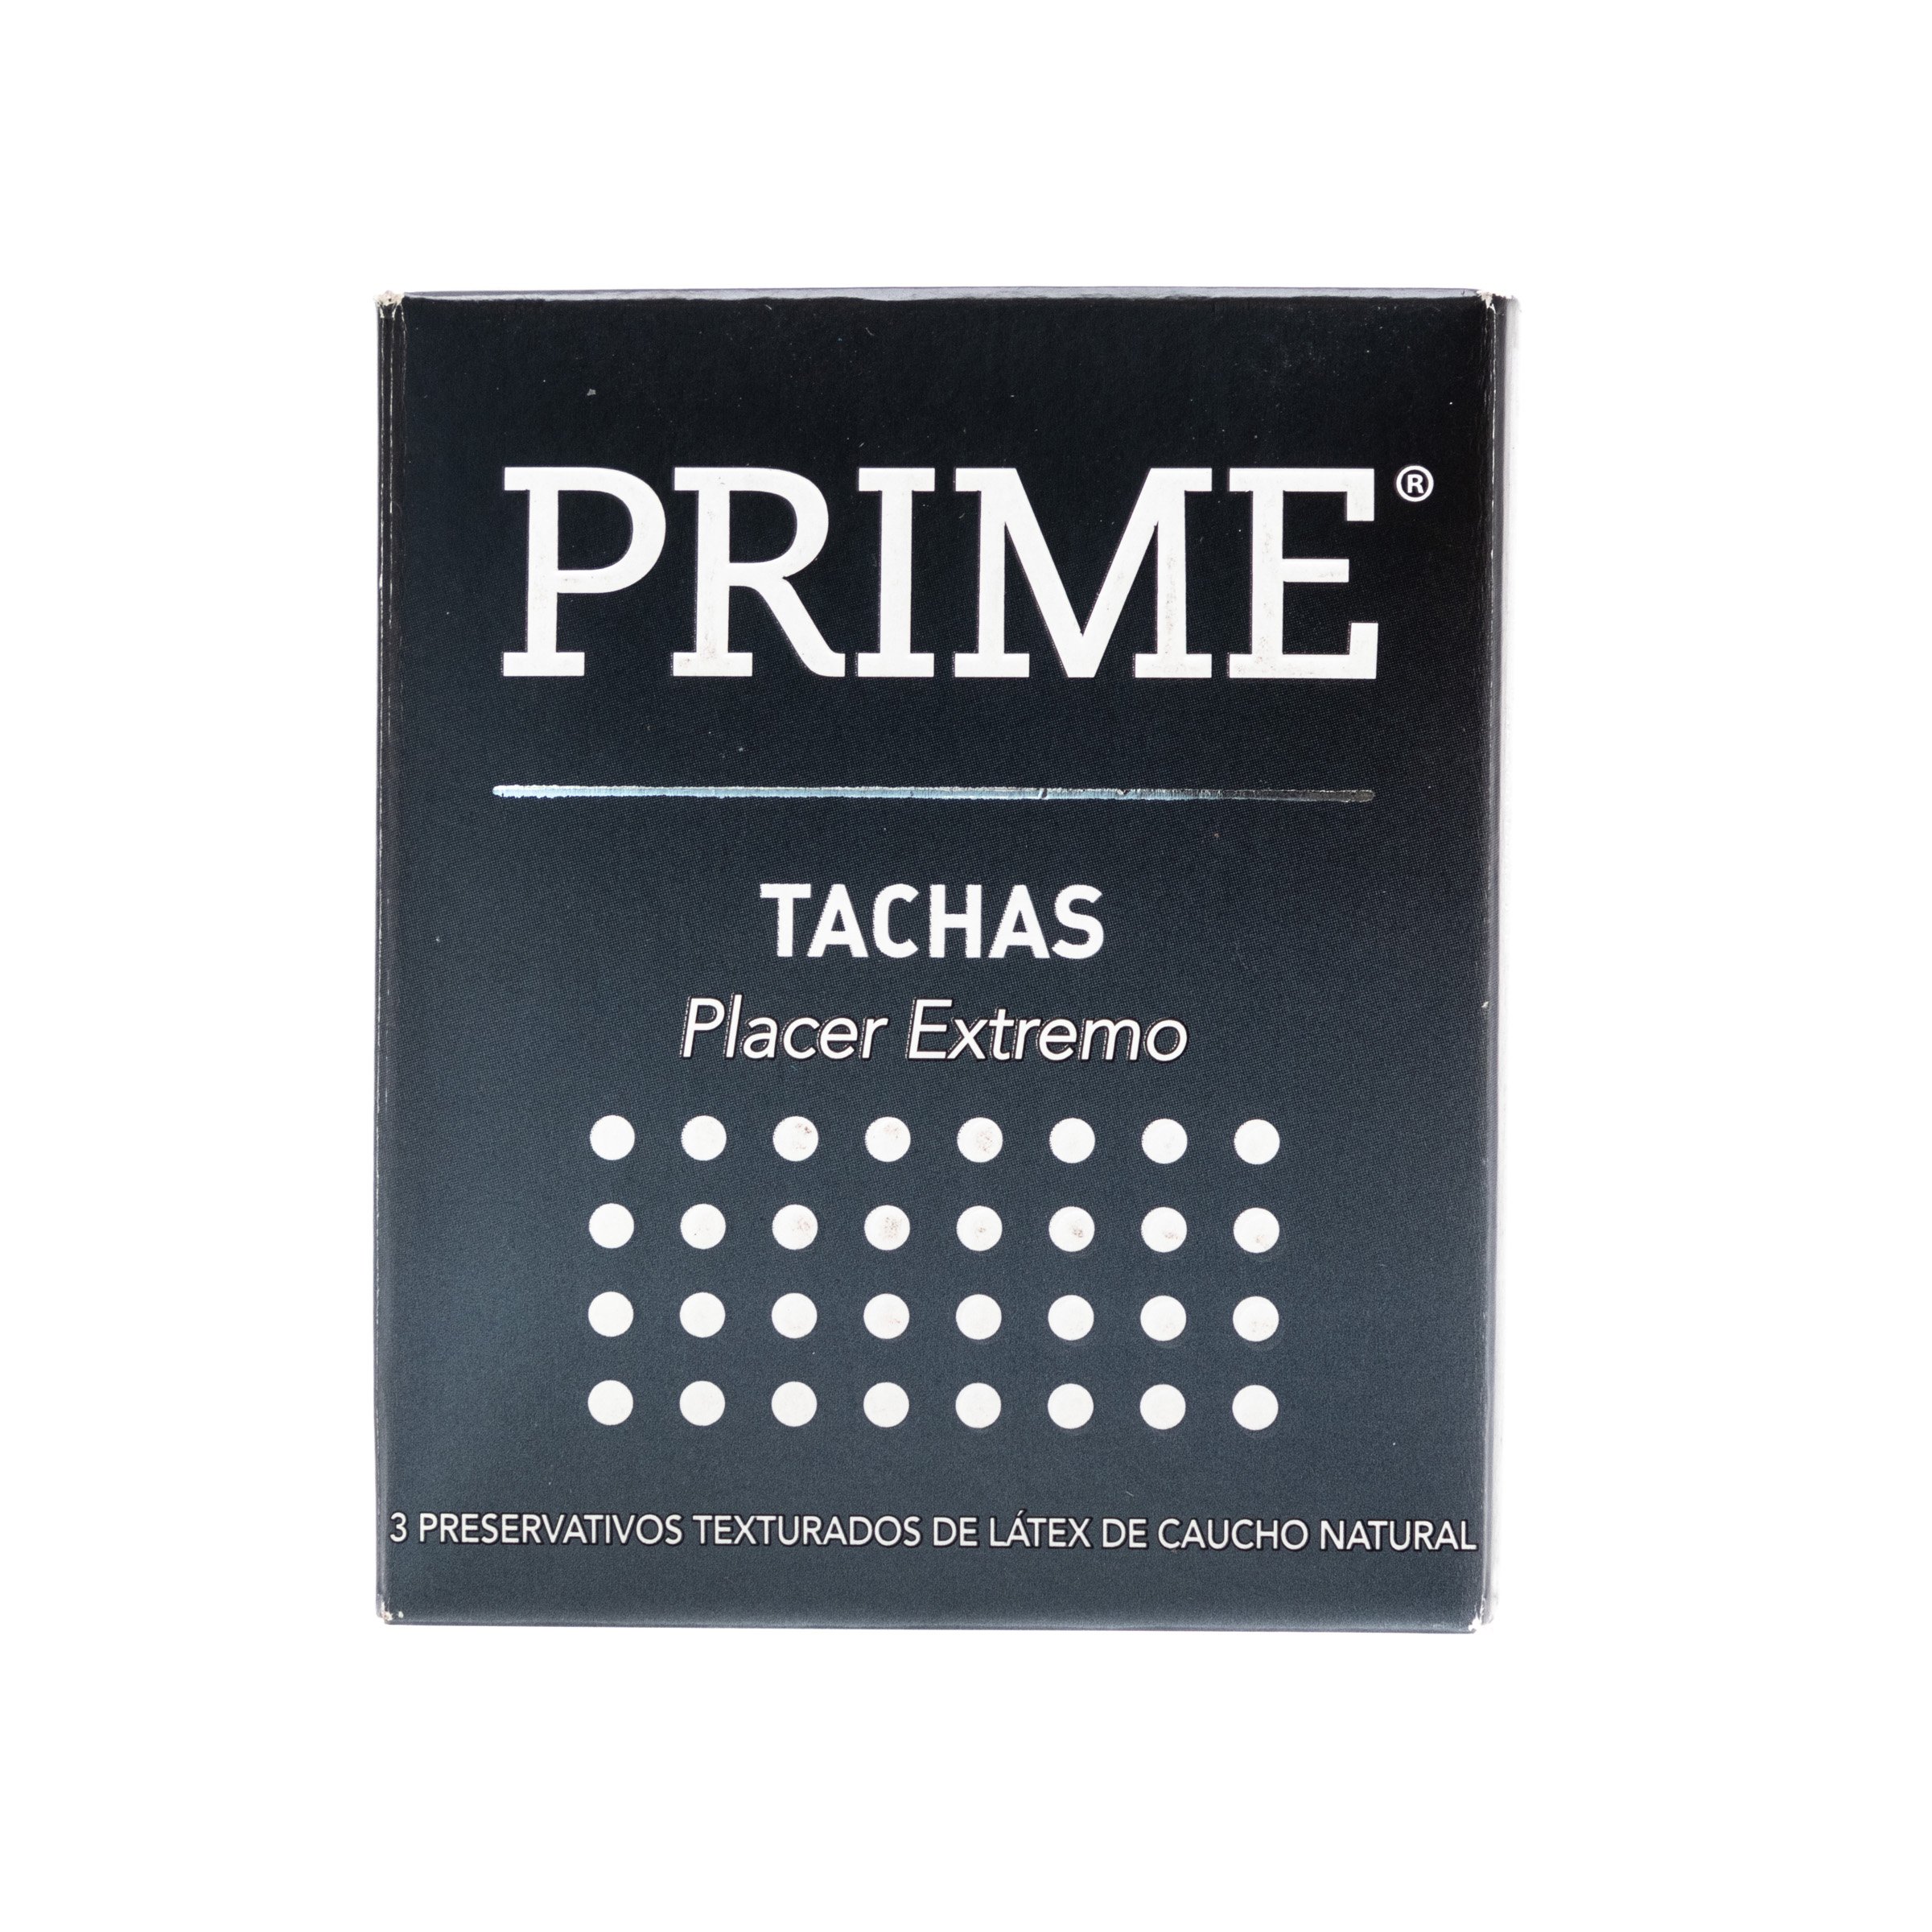 PRIME PRESERV X 3 TACHAS 0090